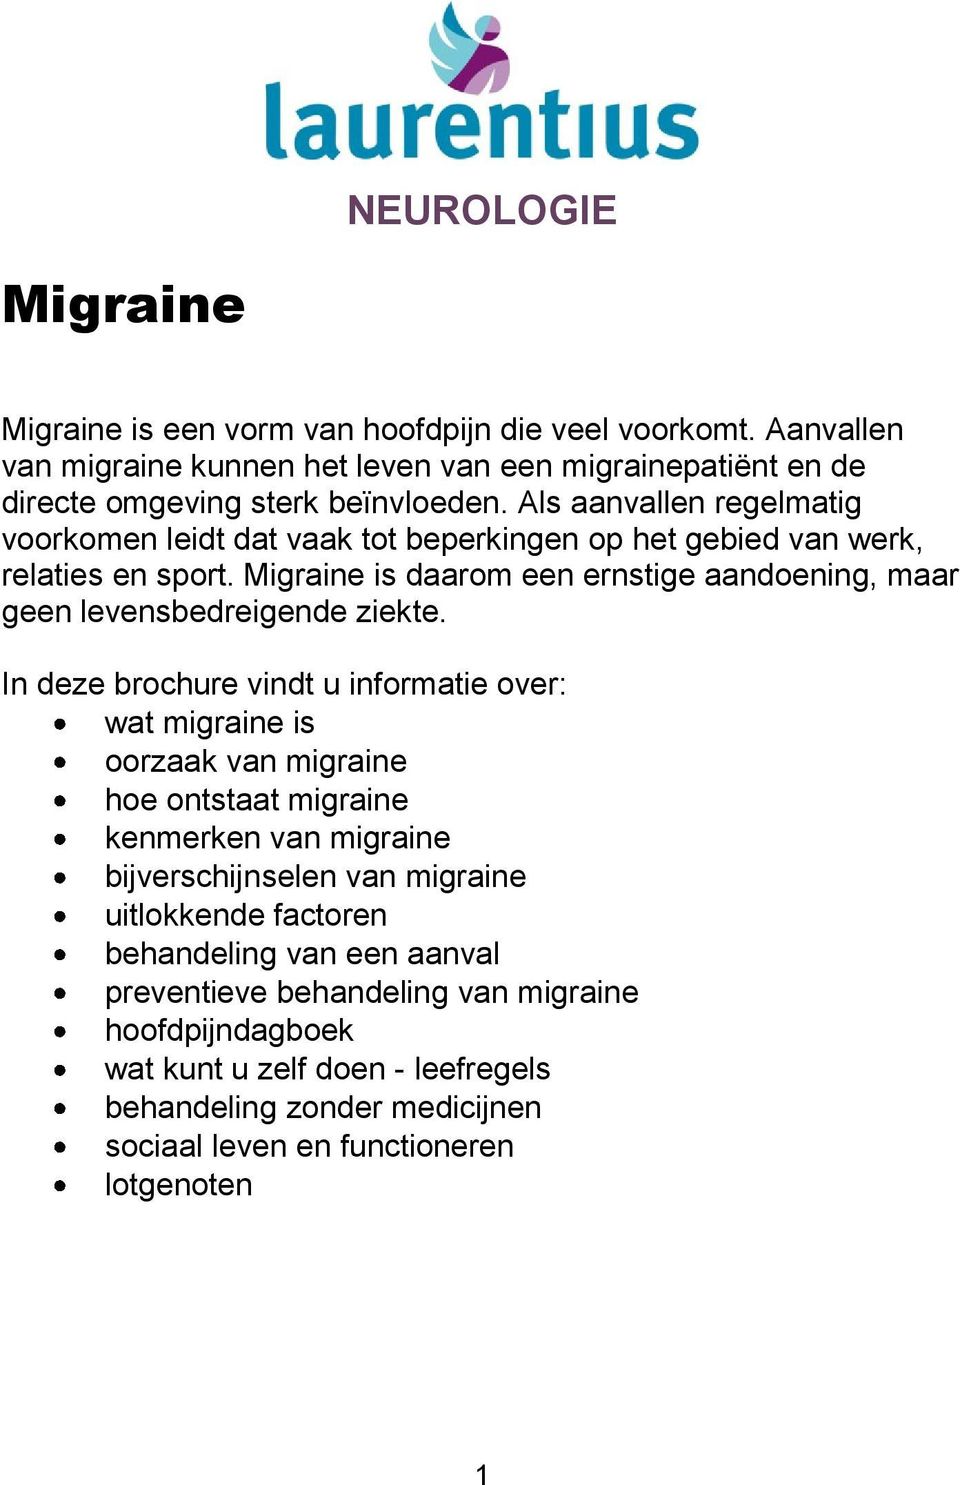 Migraine is daarom een ernstige aandoening, maar geen levensbedreigende ziekte.